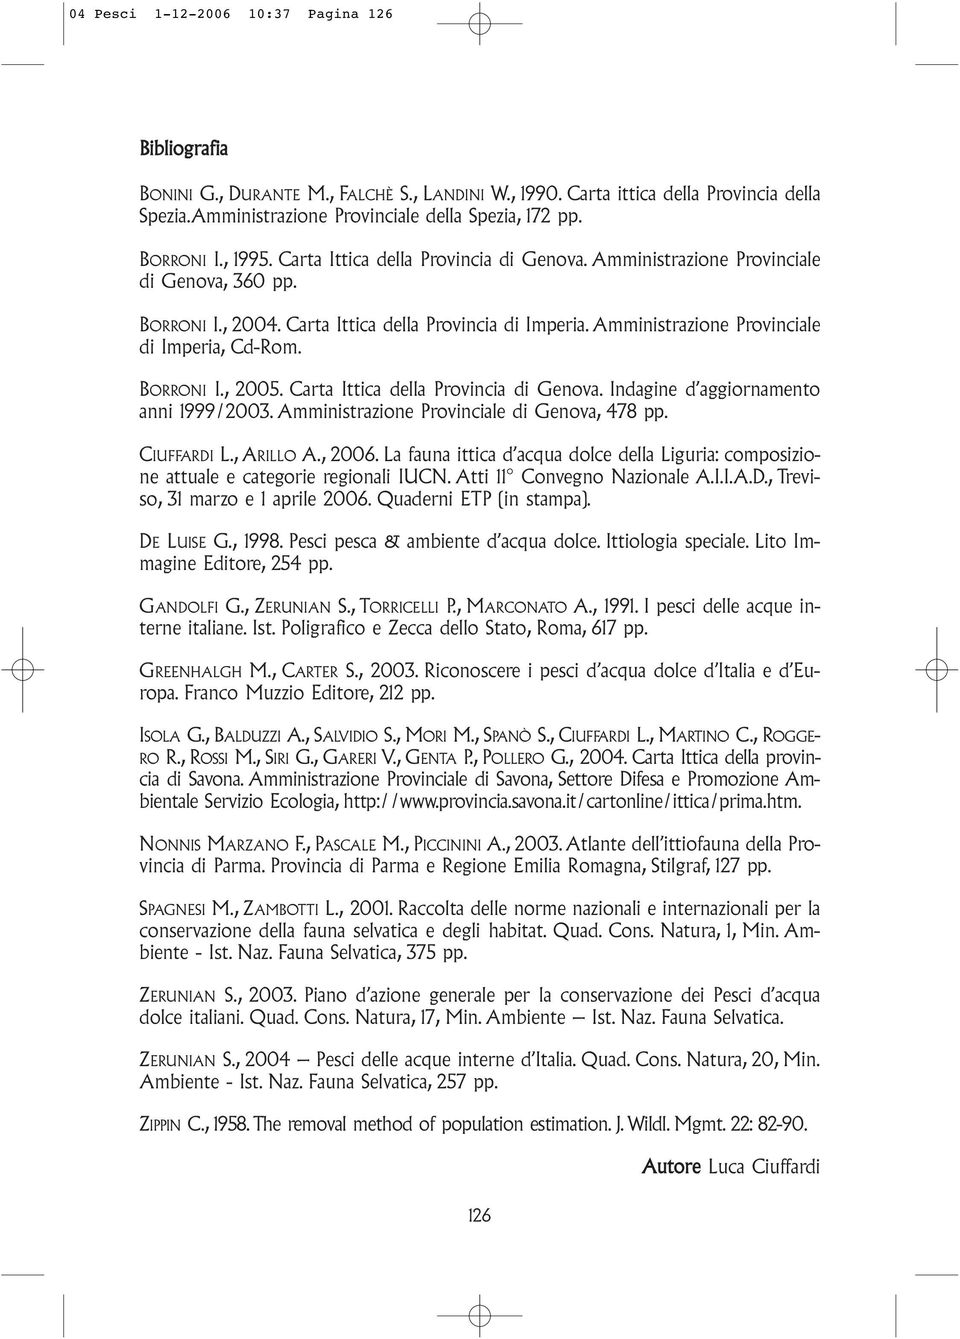 Amministrazione Provinciale di Imperia, Cd-Rom. BORRONI I., 2005. Carta Ittica della Provincia di Genova. Indagine d aggiornamento anni 1999/2003. Amministrazione Provinciale di Genova, 478 pp.